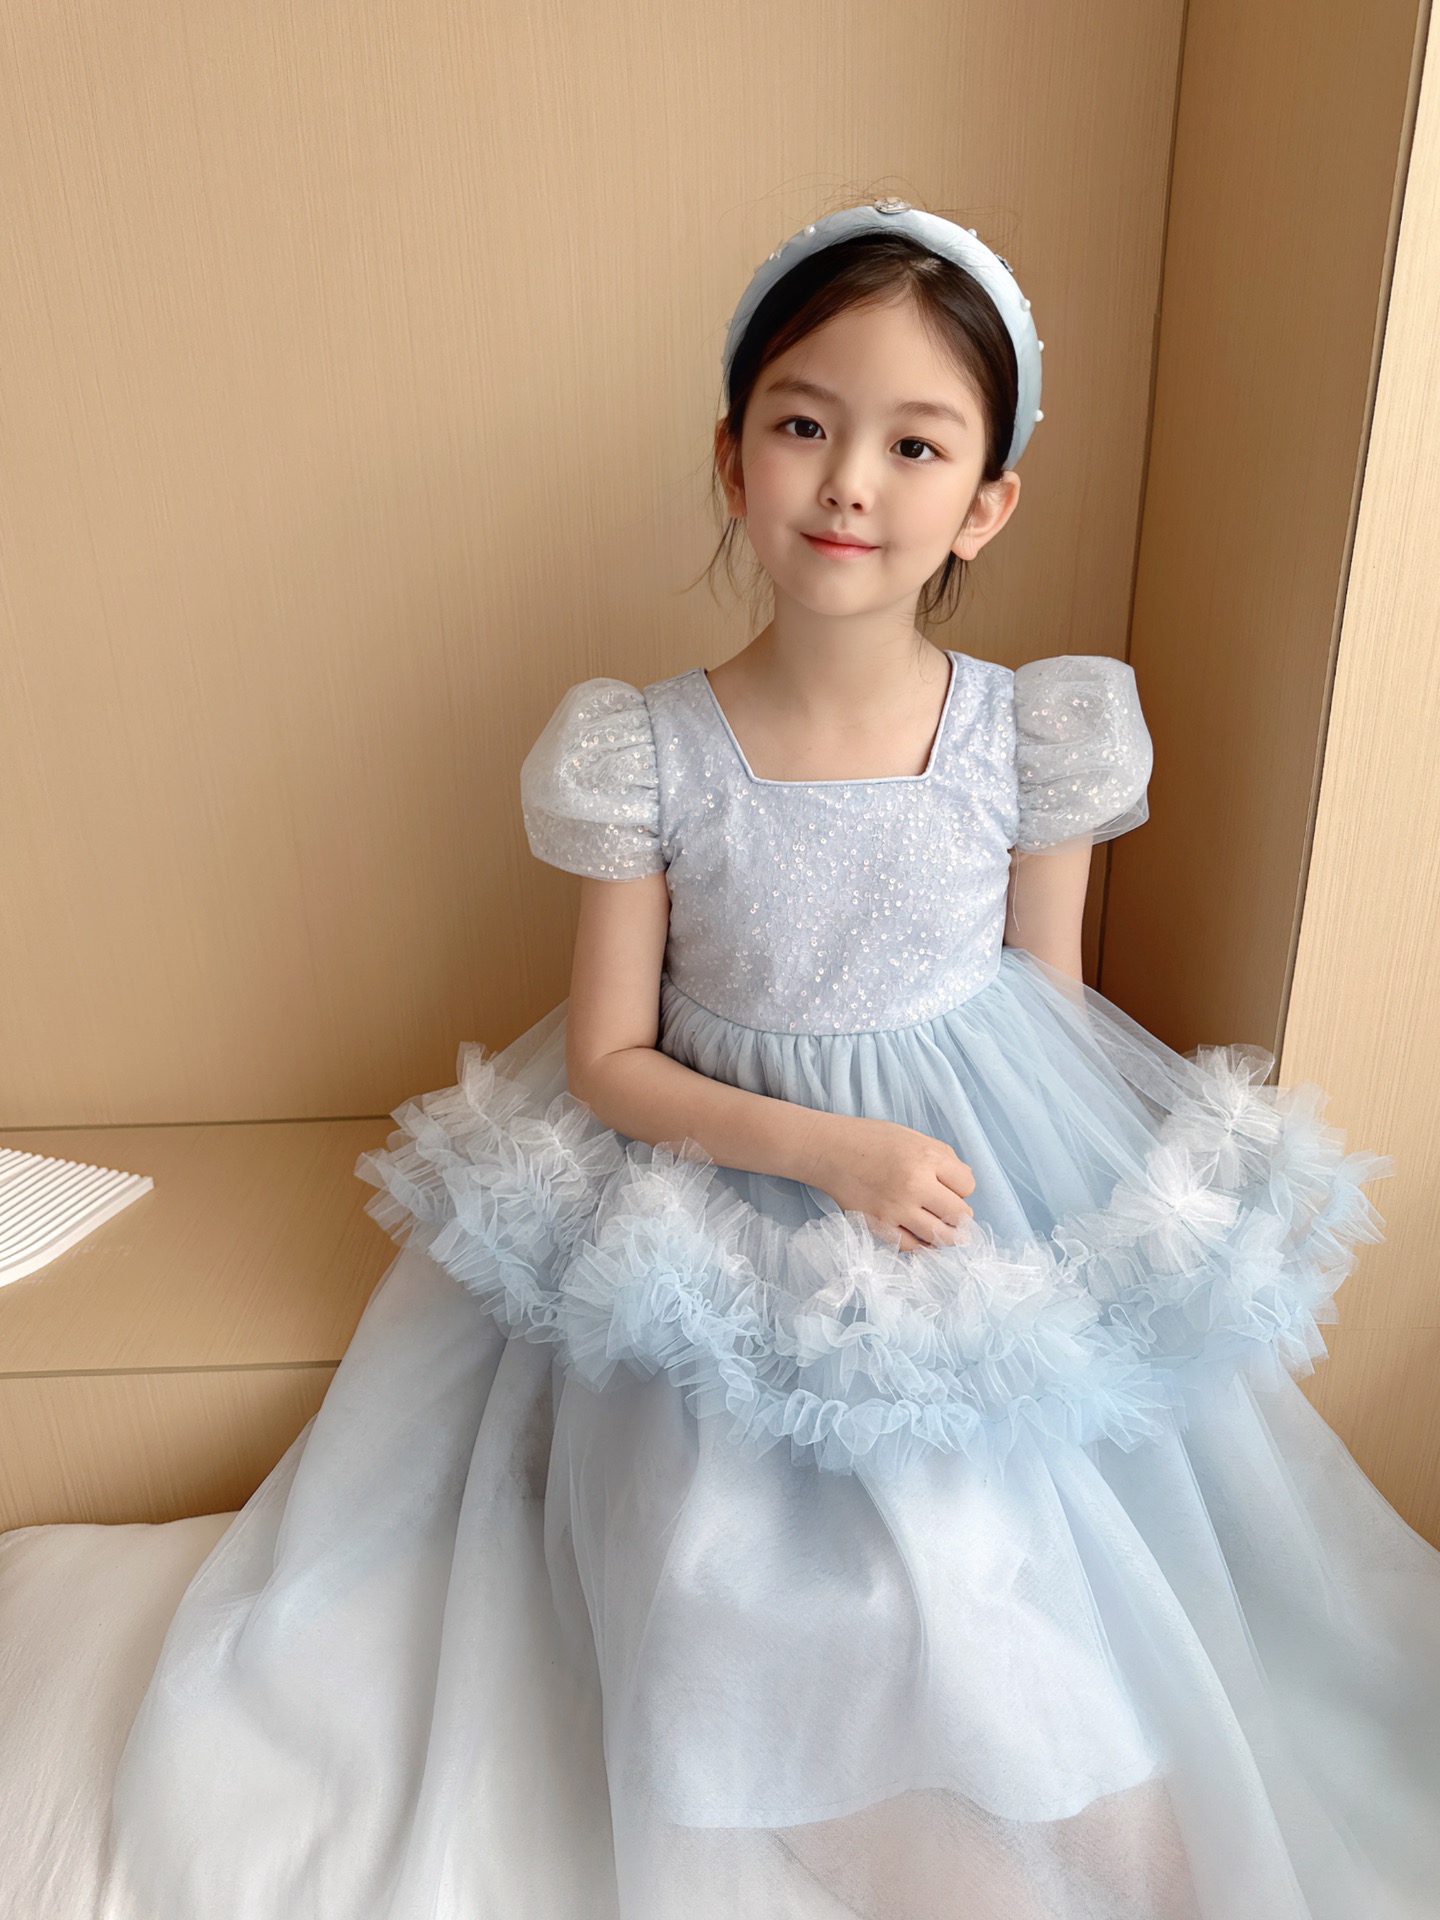 Kinder im maßgeschneiderten Stil Kinder Mädchen Spitzen Brautkleider Kinderkleidung formelle Kleider Mode Sommerprinzessin Kleid